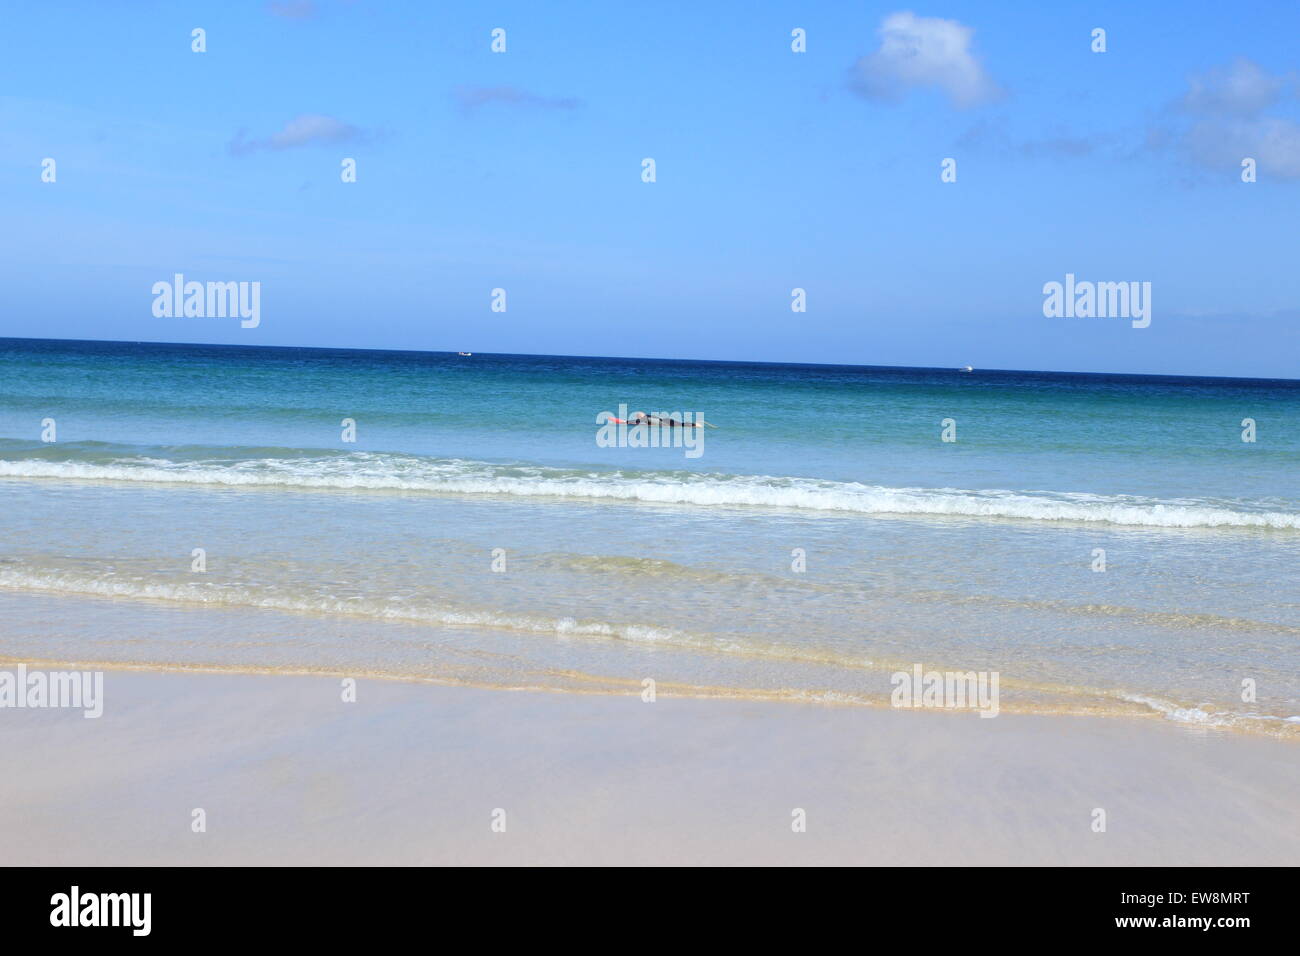 Cornish Küste, Sand Golden schöne Landschaft, blauer Himmel weiße Wolken, blaues Meer, Wellen, Urlaubsziel. Stockfoto